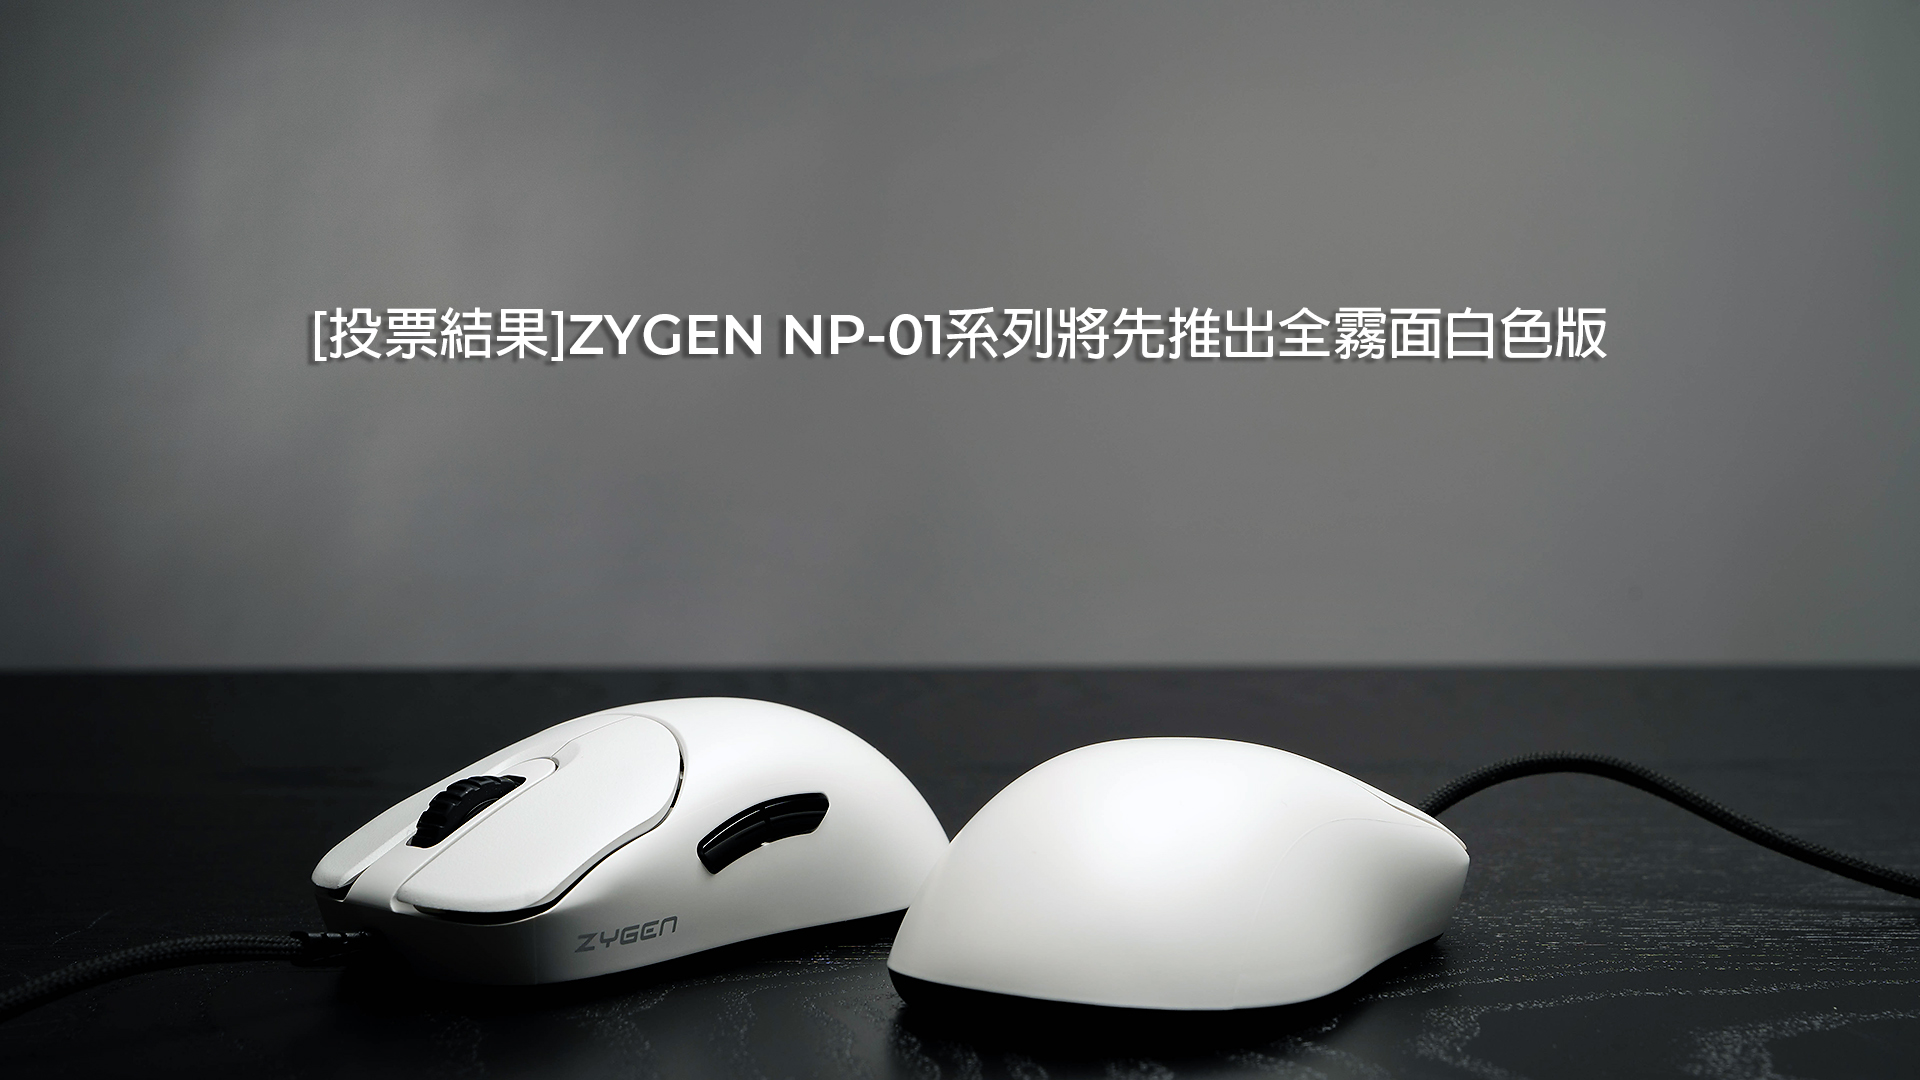 投票結果]ZYGEN NP-01系列將先推出全霧面白色版_新聞_最新消息| VAXEE 